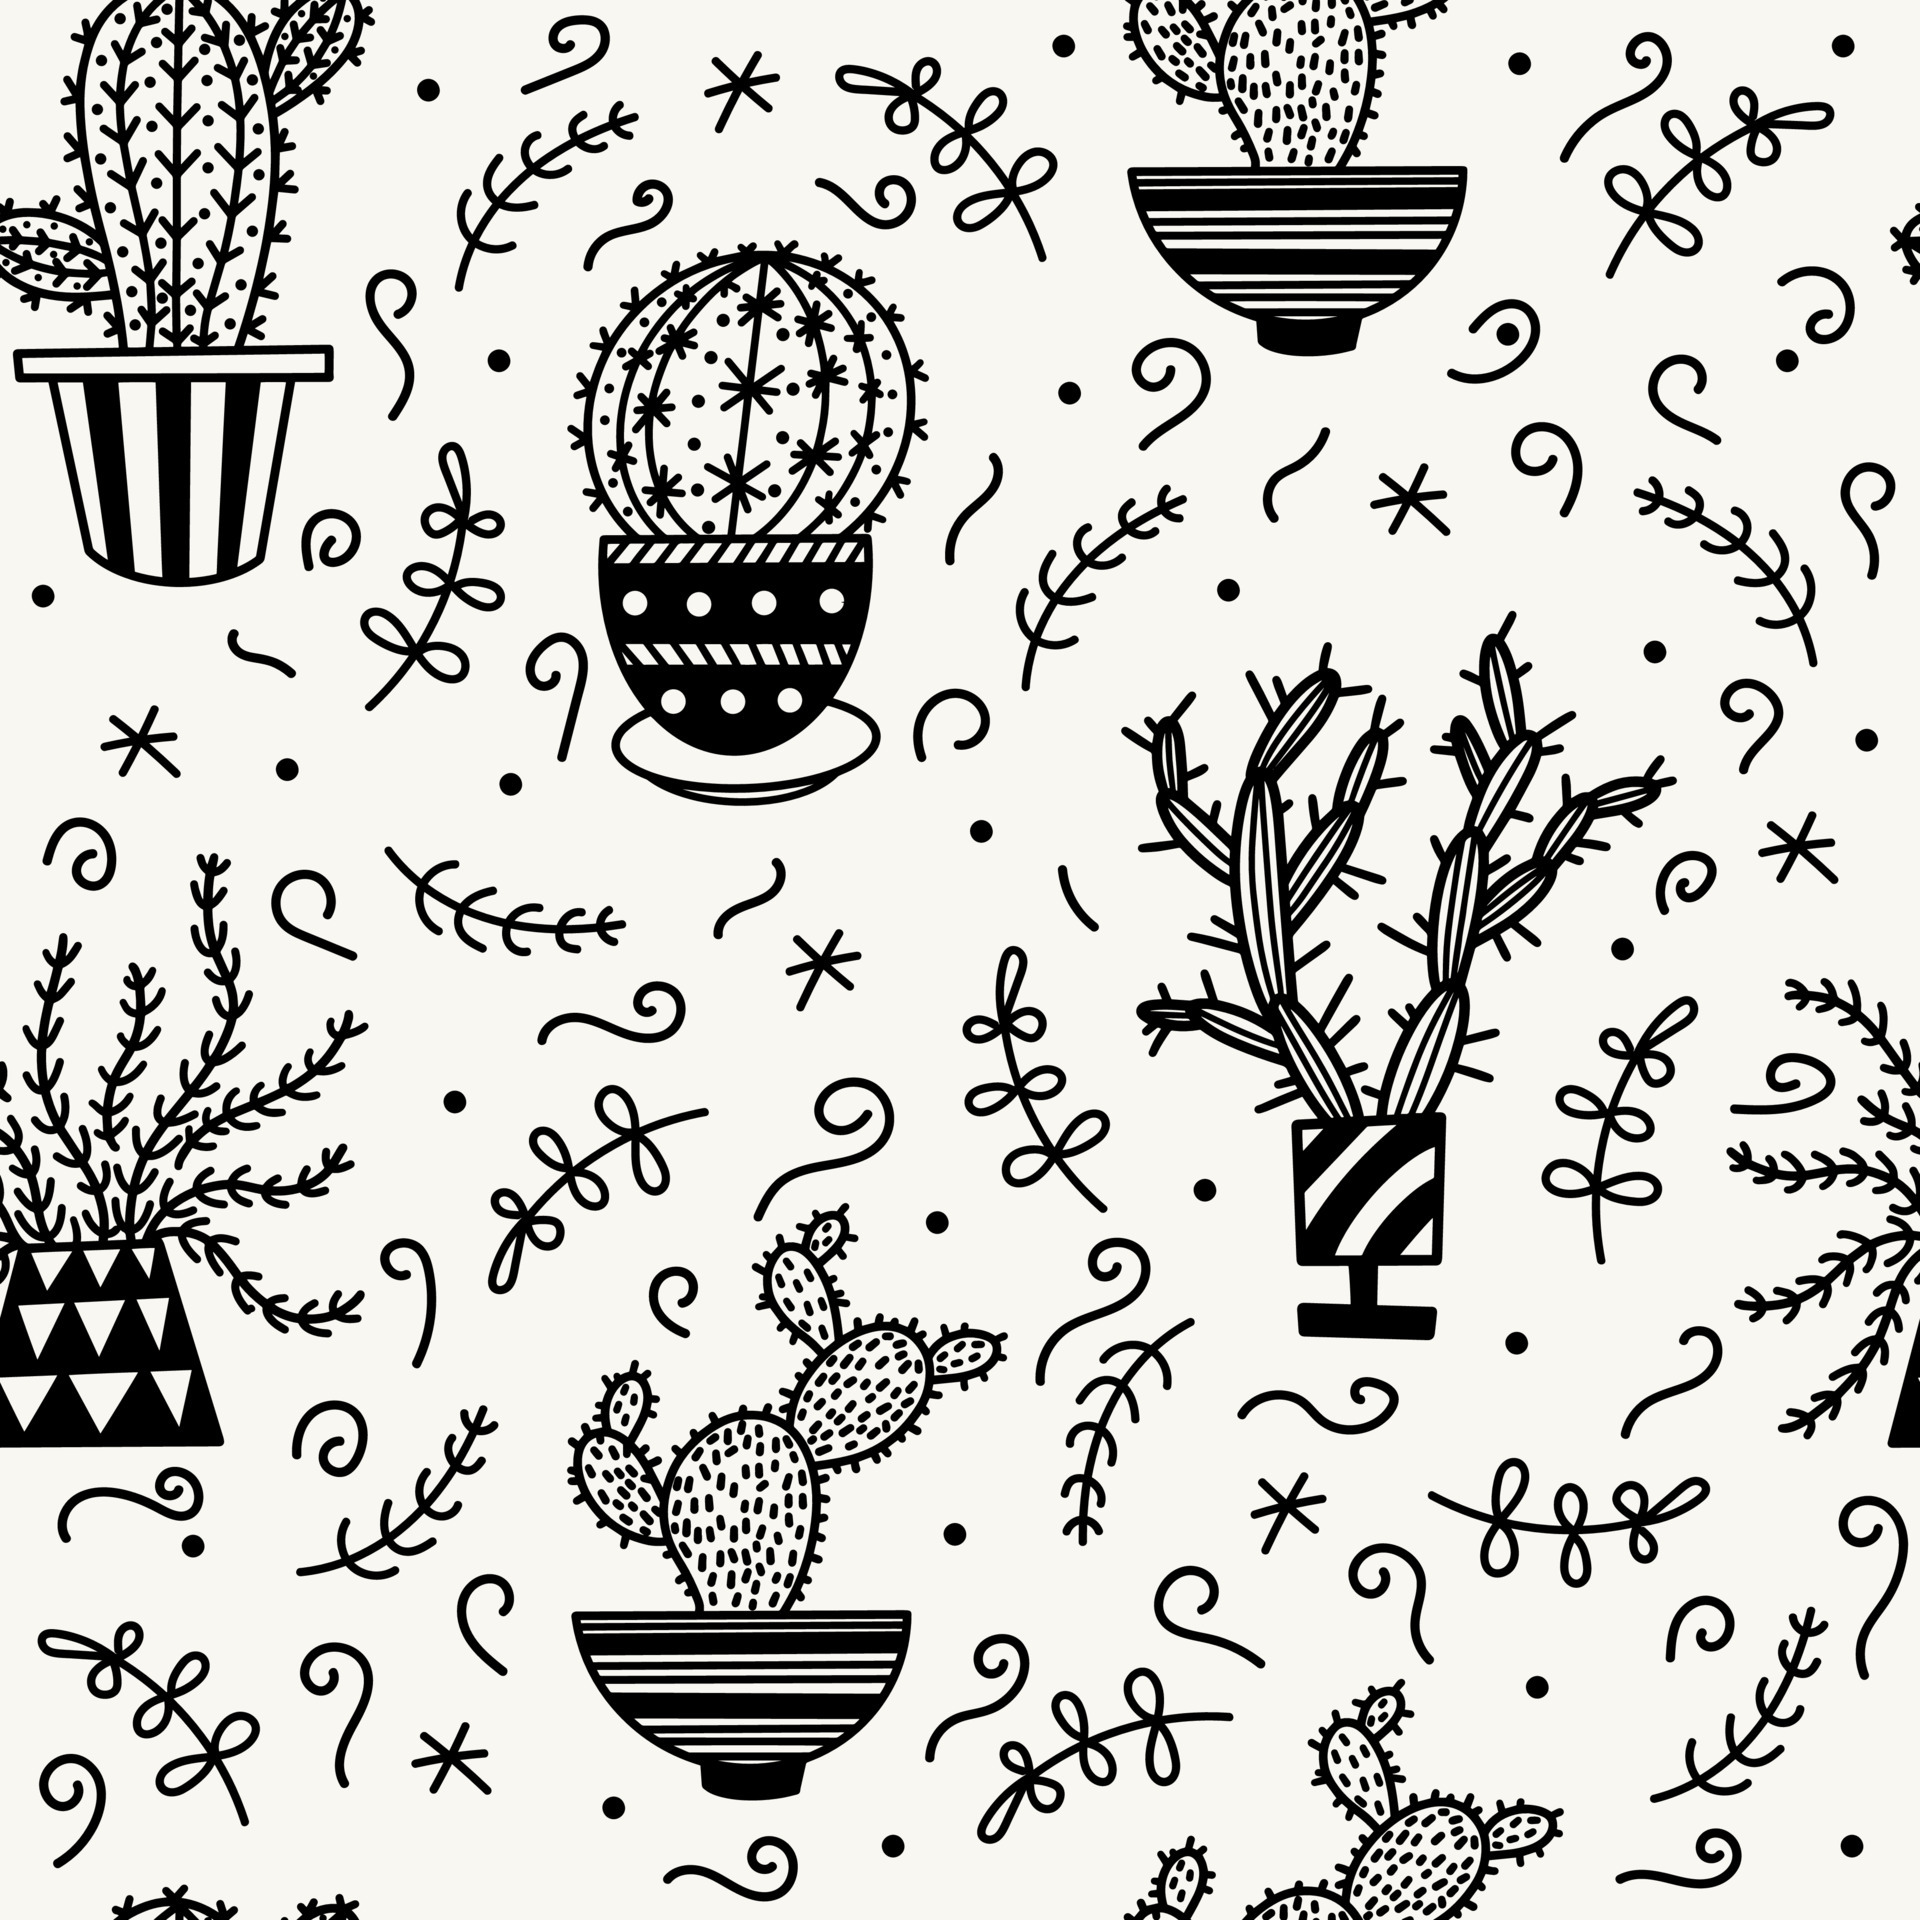 Ilustração de suculentas e cactos em preto e branco · Creative Fabrica